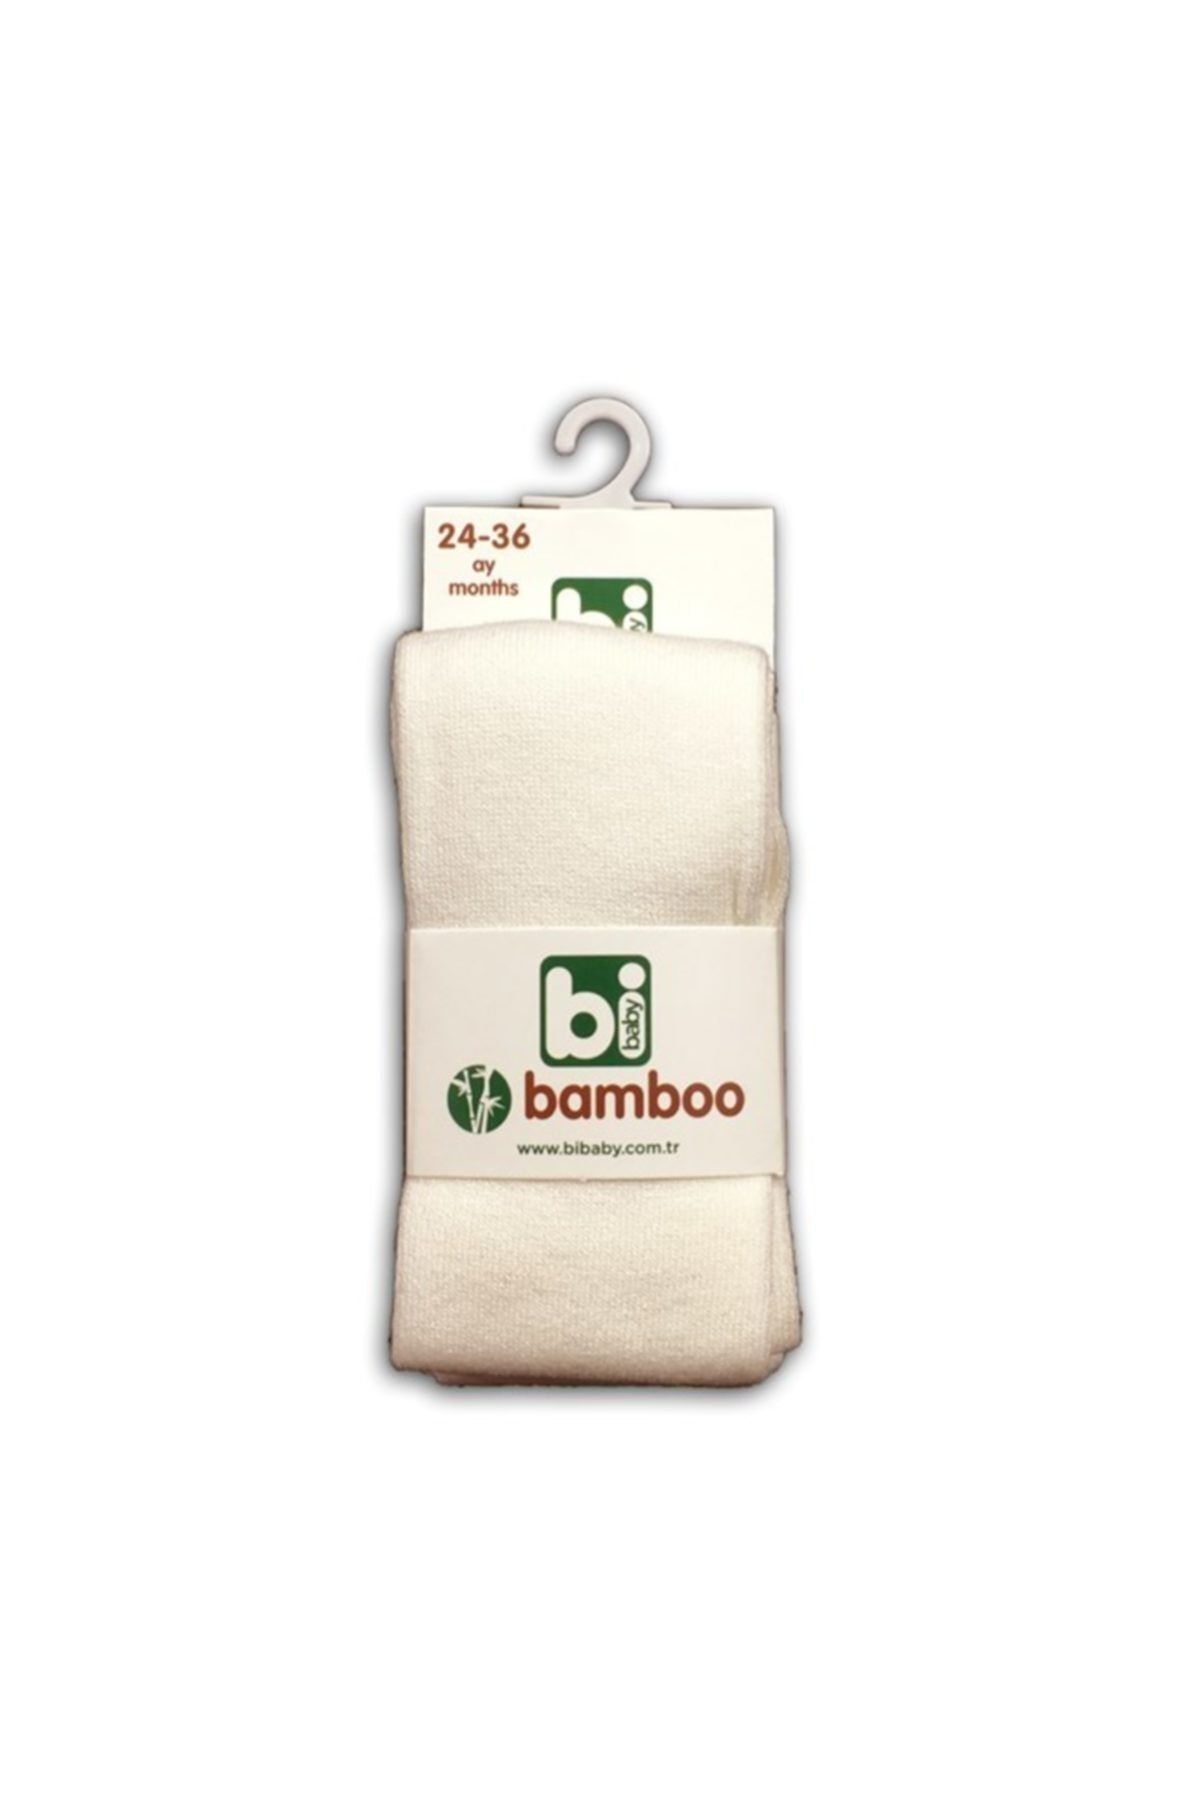 Bibaby Bamboo Külotlu Çorap - Ekru.